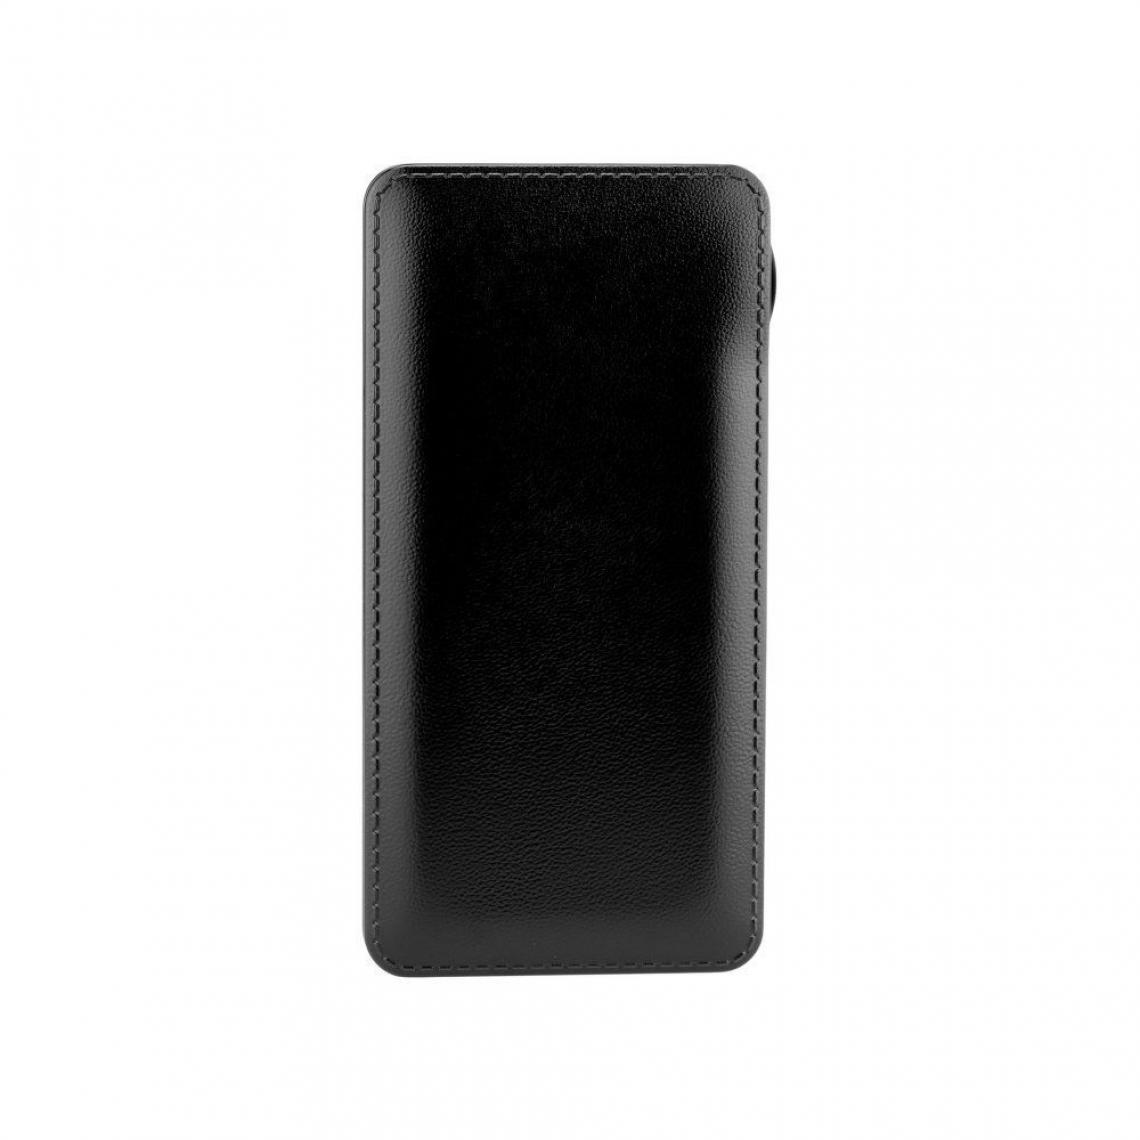 Ozzzo - Chargeur batterie externe 30000 mAh powerbank ozzzo noir pour Samsung Galaxy A50 - Autres accessoires smartphone